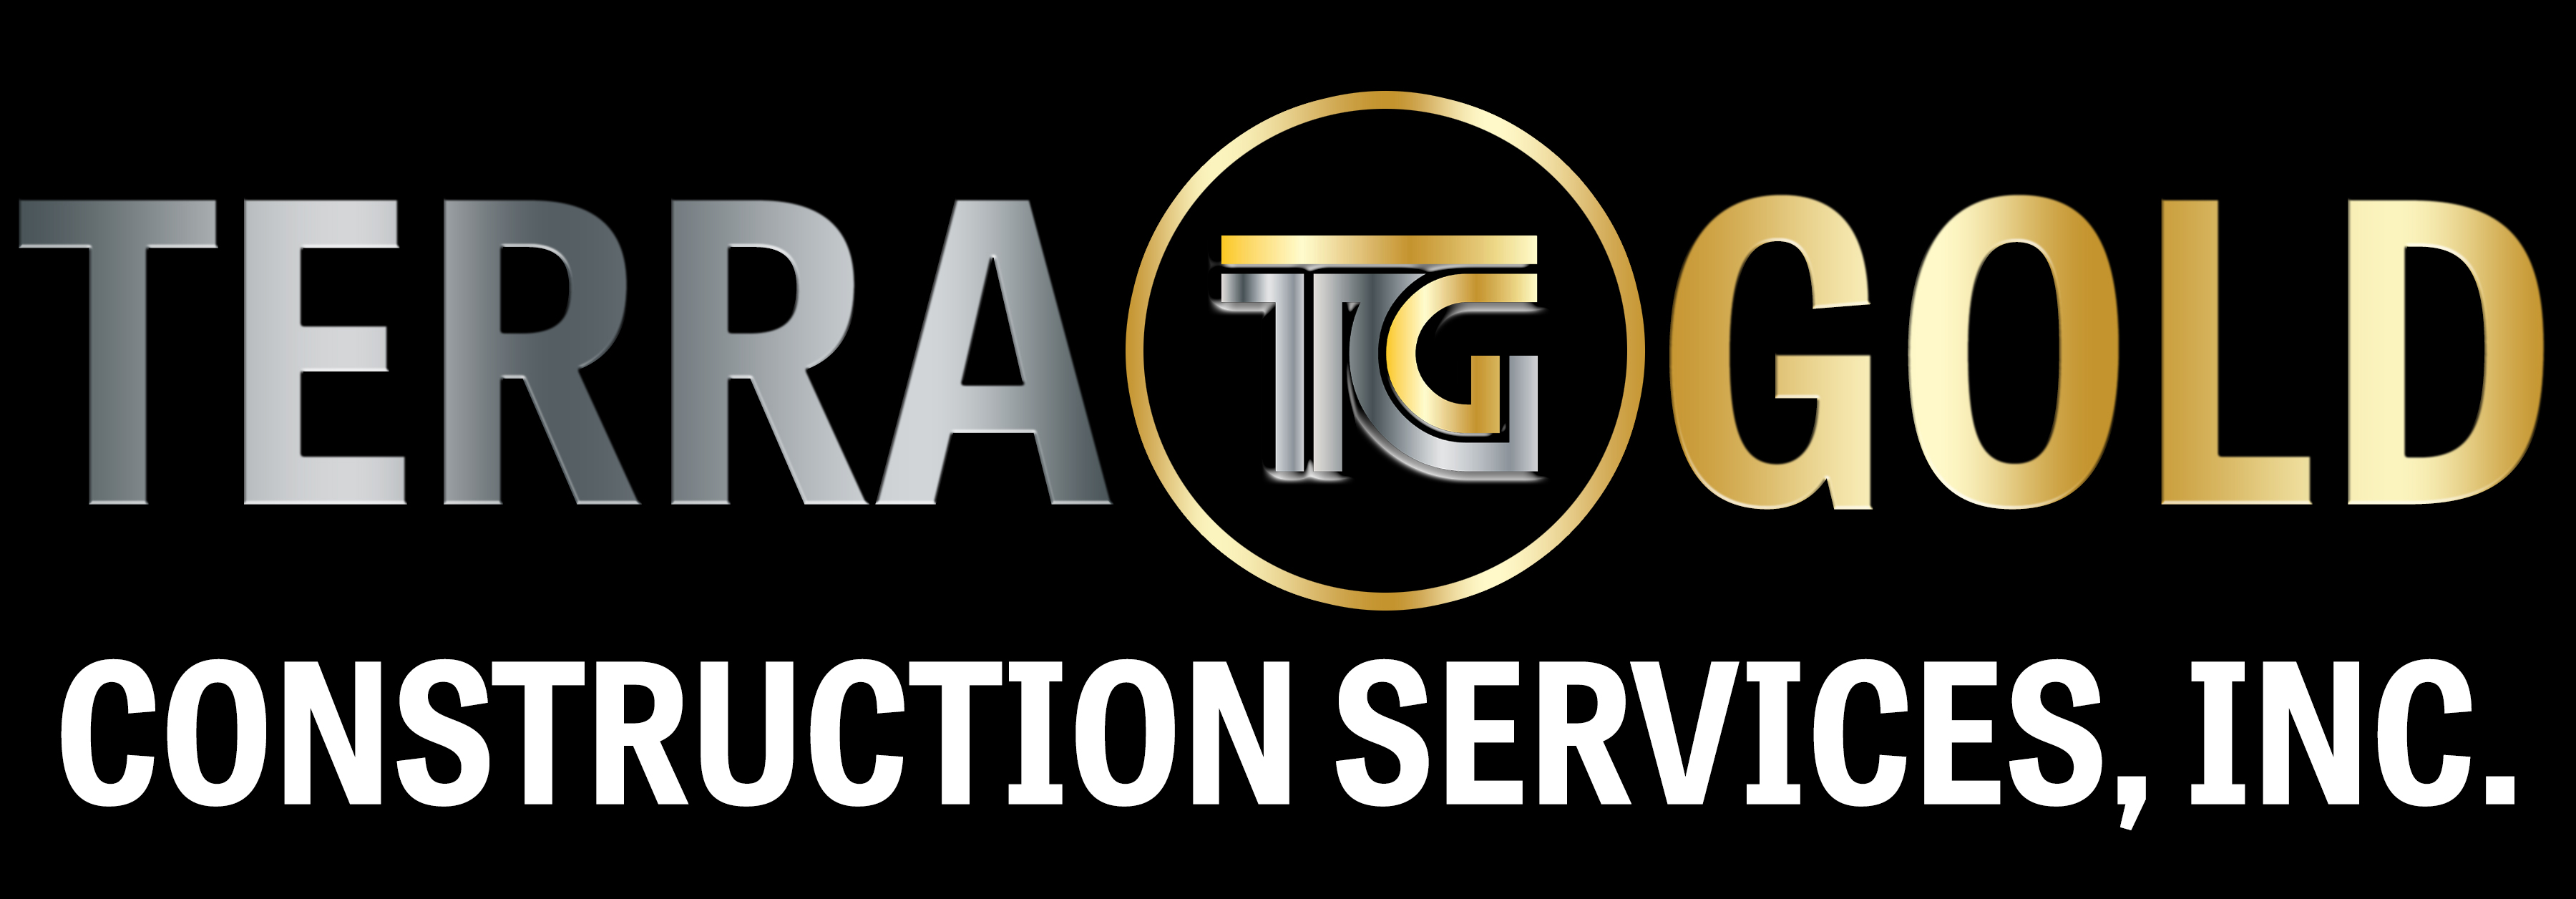 Terragold Construction Services Inc Logo